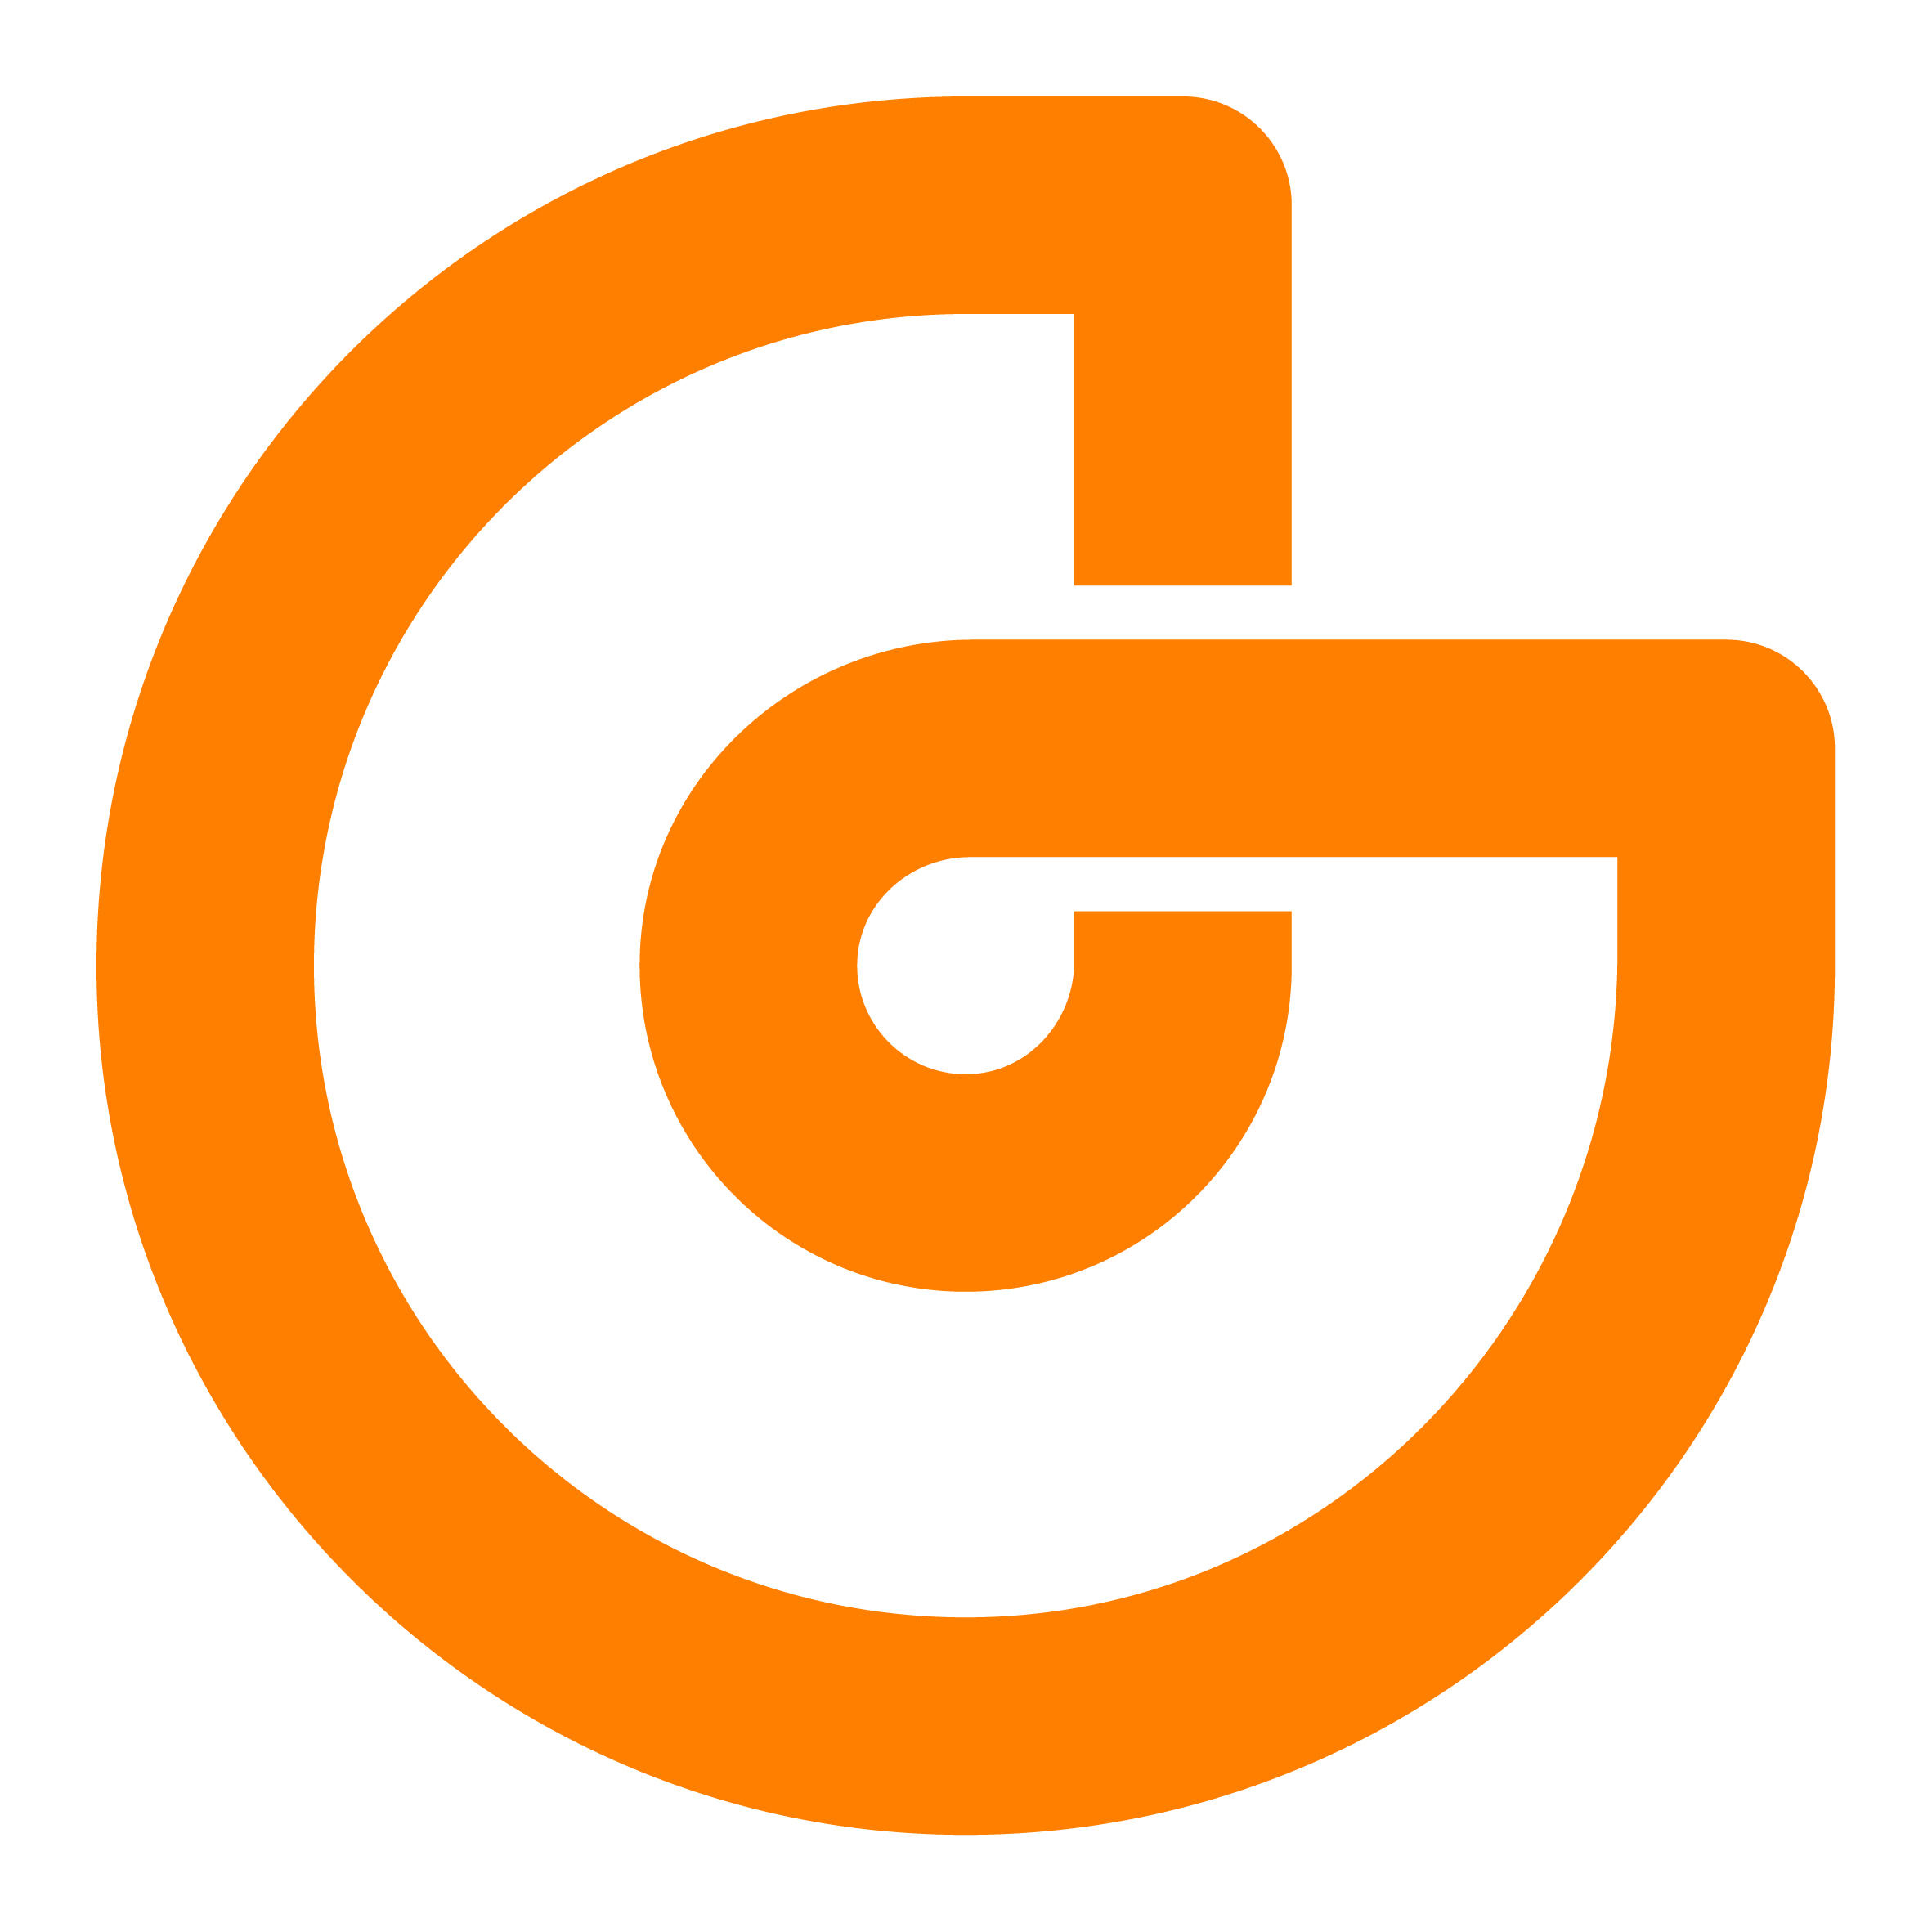 Deutsche GigaNetz – Beratung vor Ort bei MoCos GmbH in Lauffen am Neckar - Logo